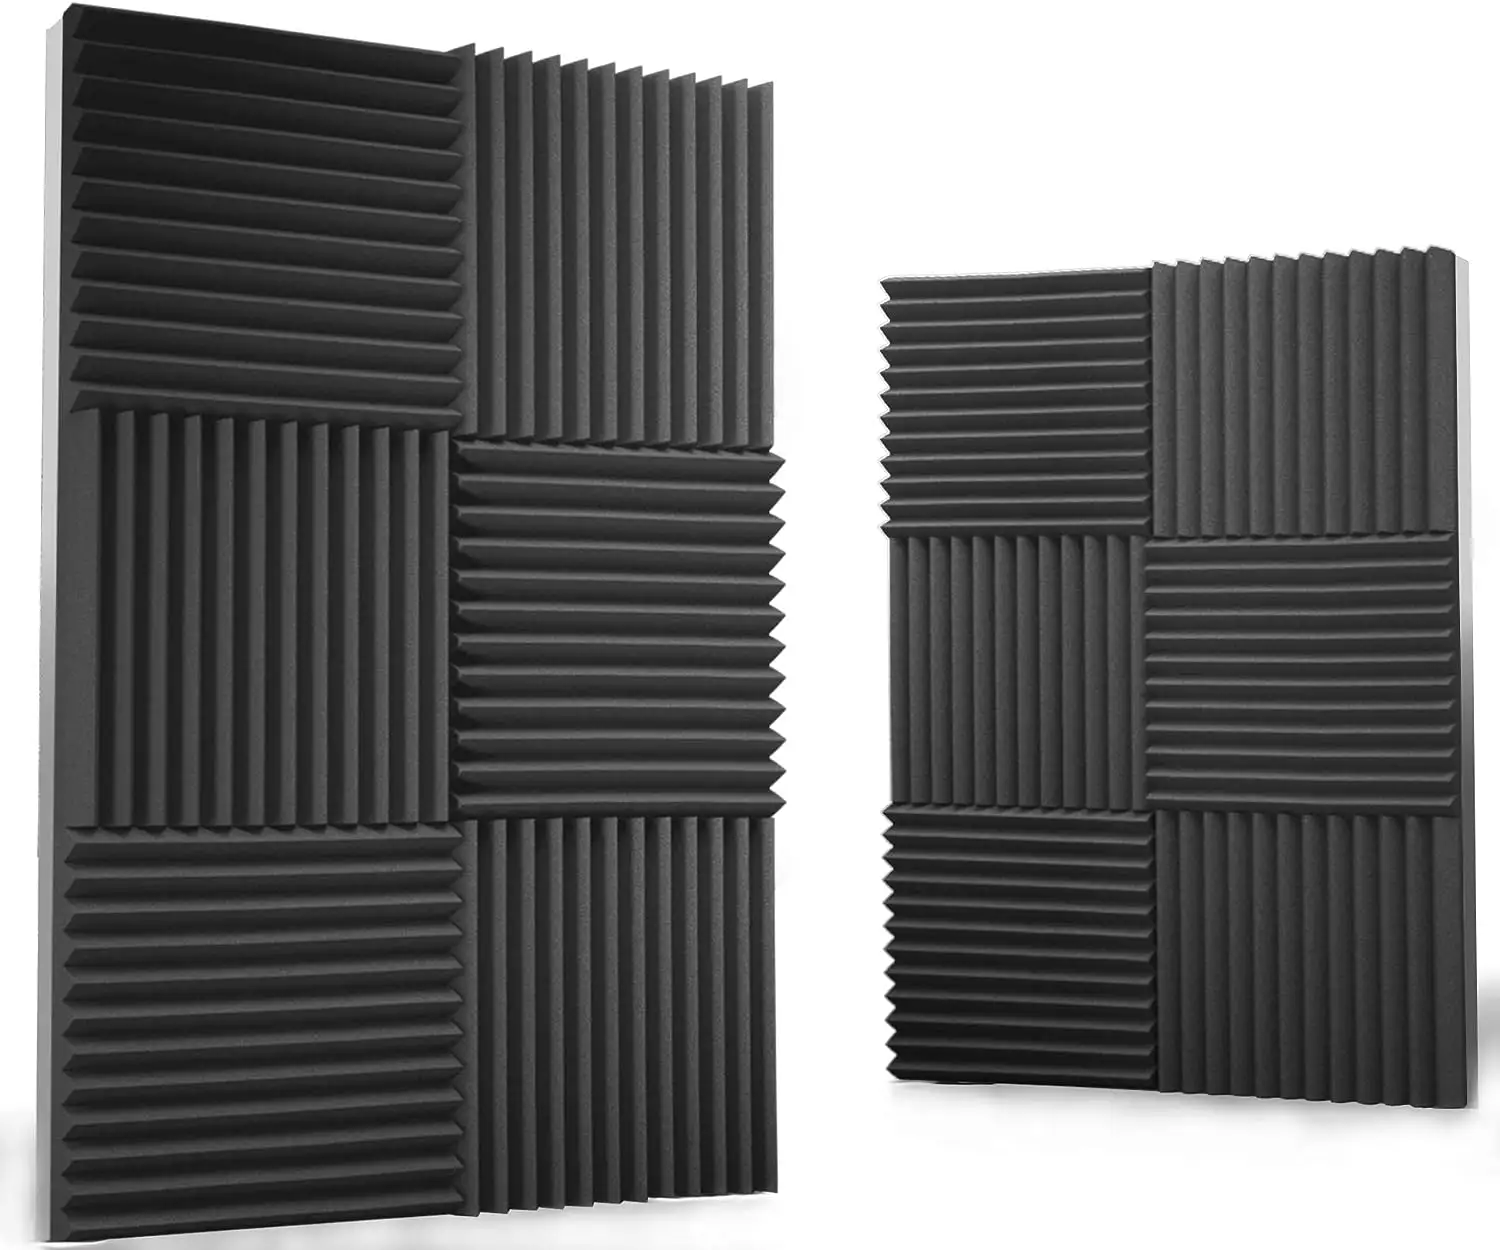 Panel dinding kedap suara busa akustik Studio kedap suara Panel dinding kedap suara